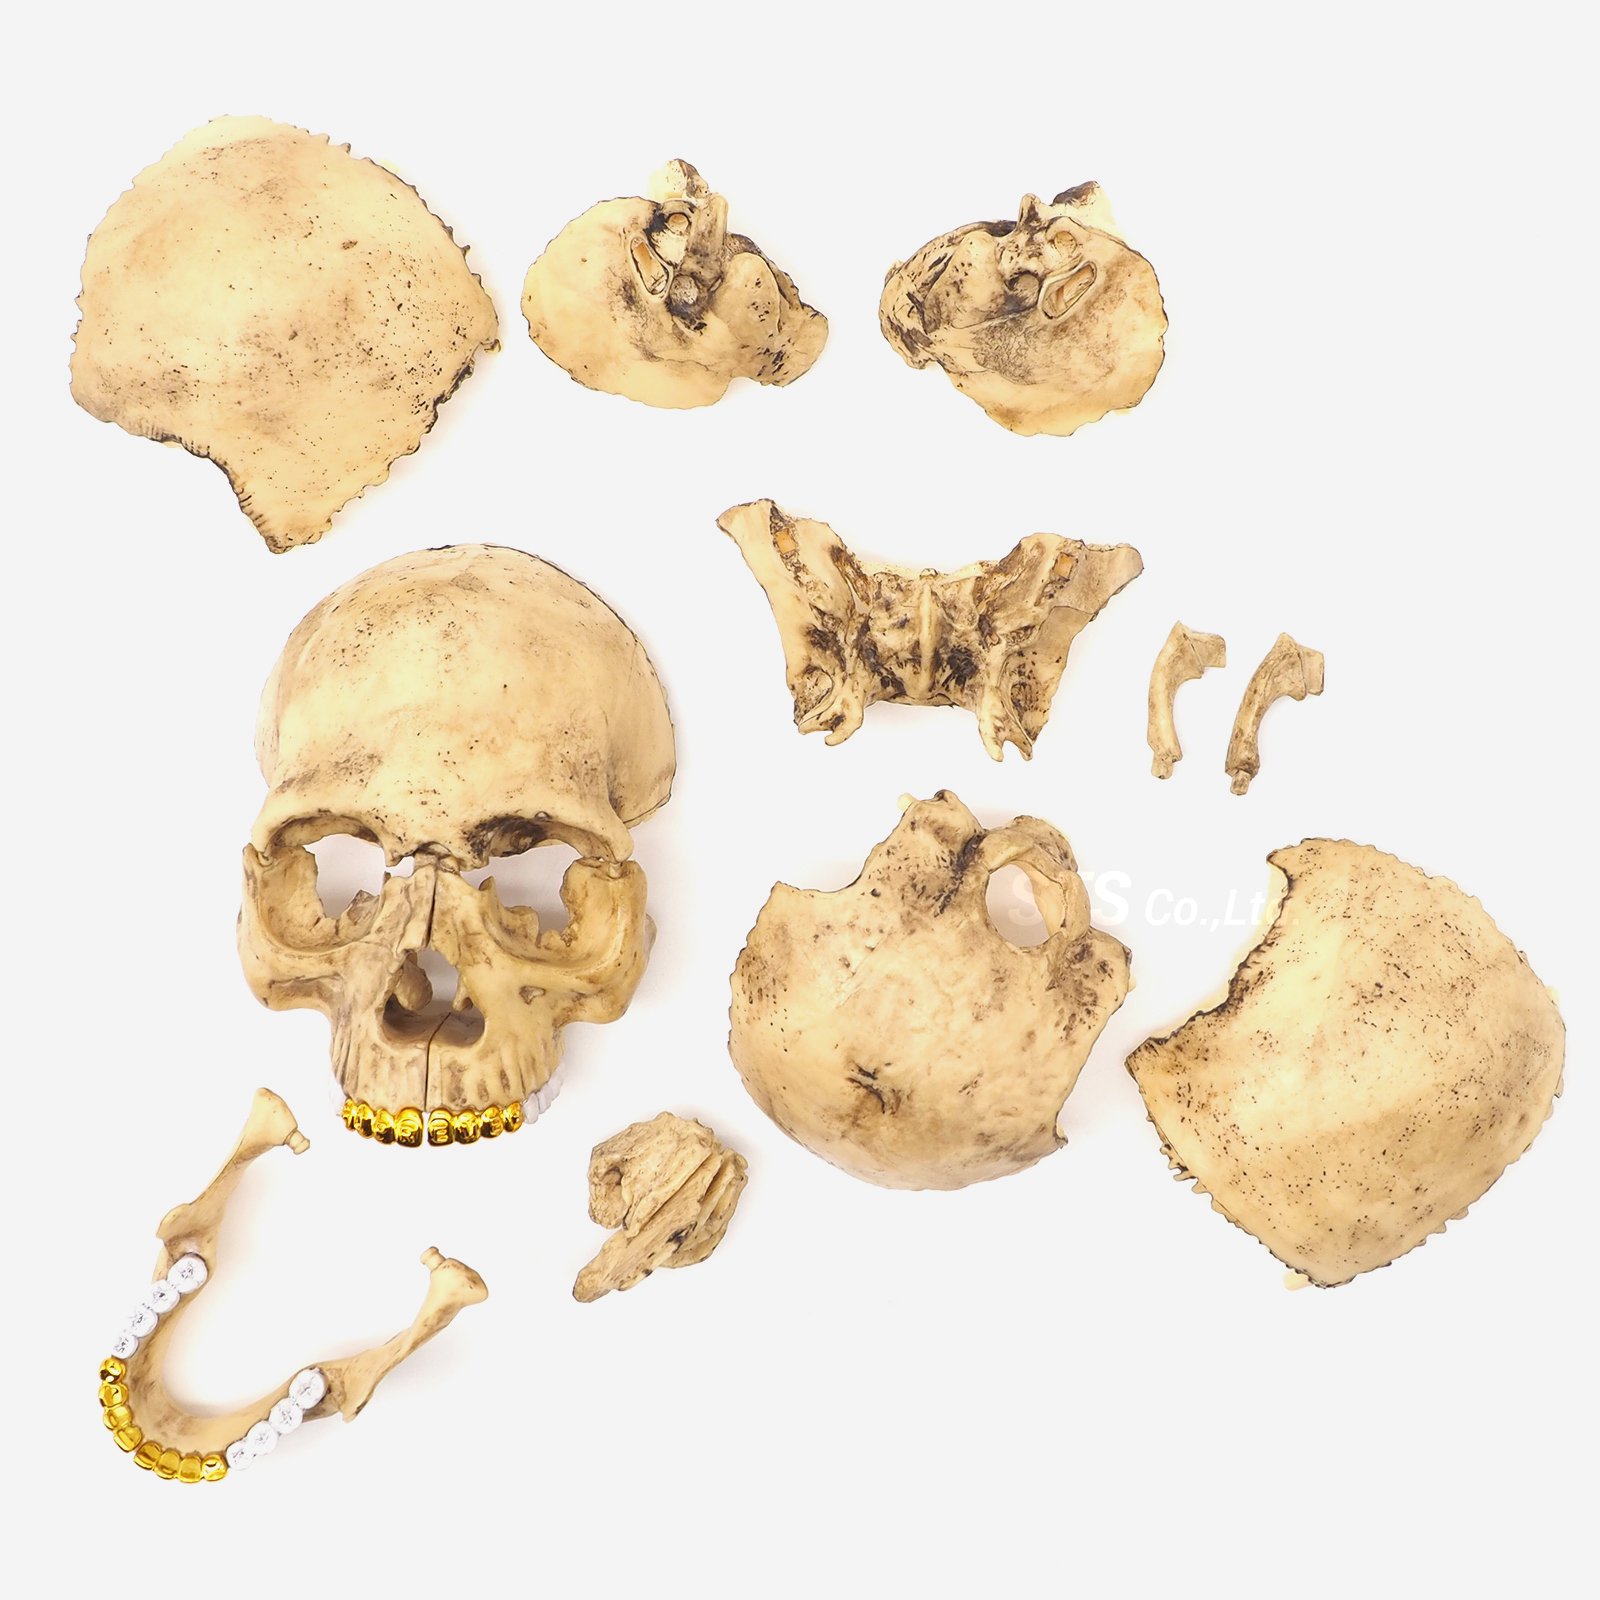 Supreme - 4D Model Human Skull | 頭蓋骨の模型パズル - UG.SHAFT